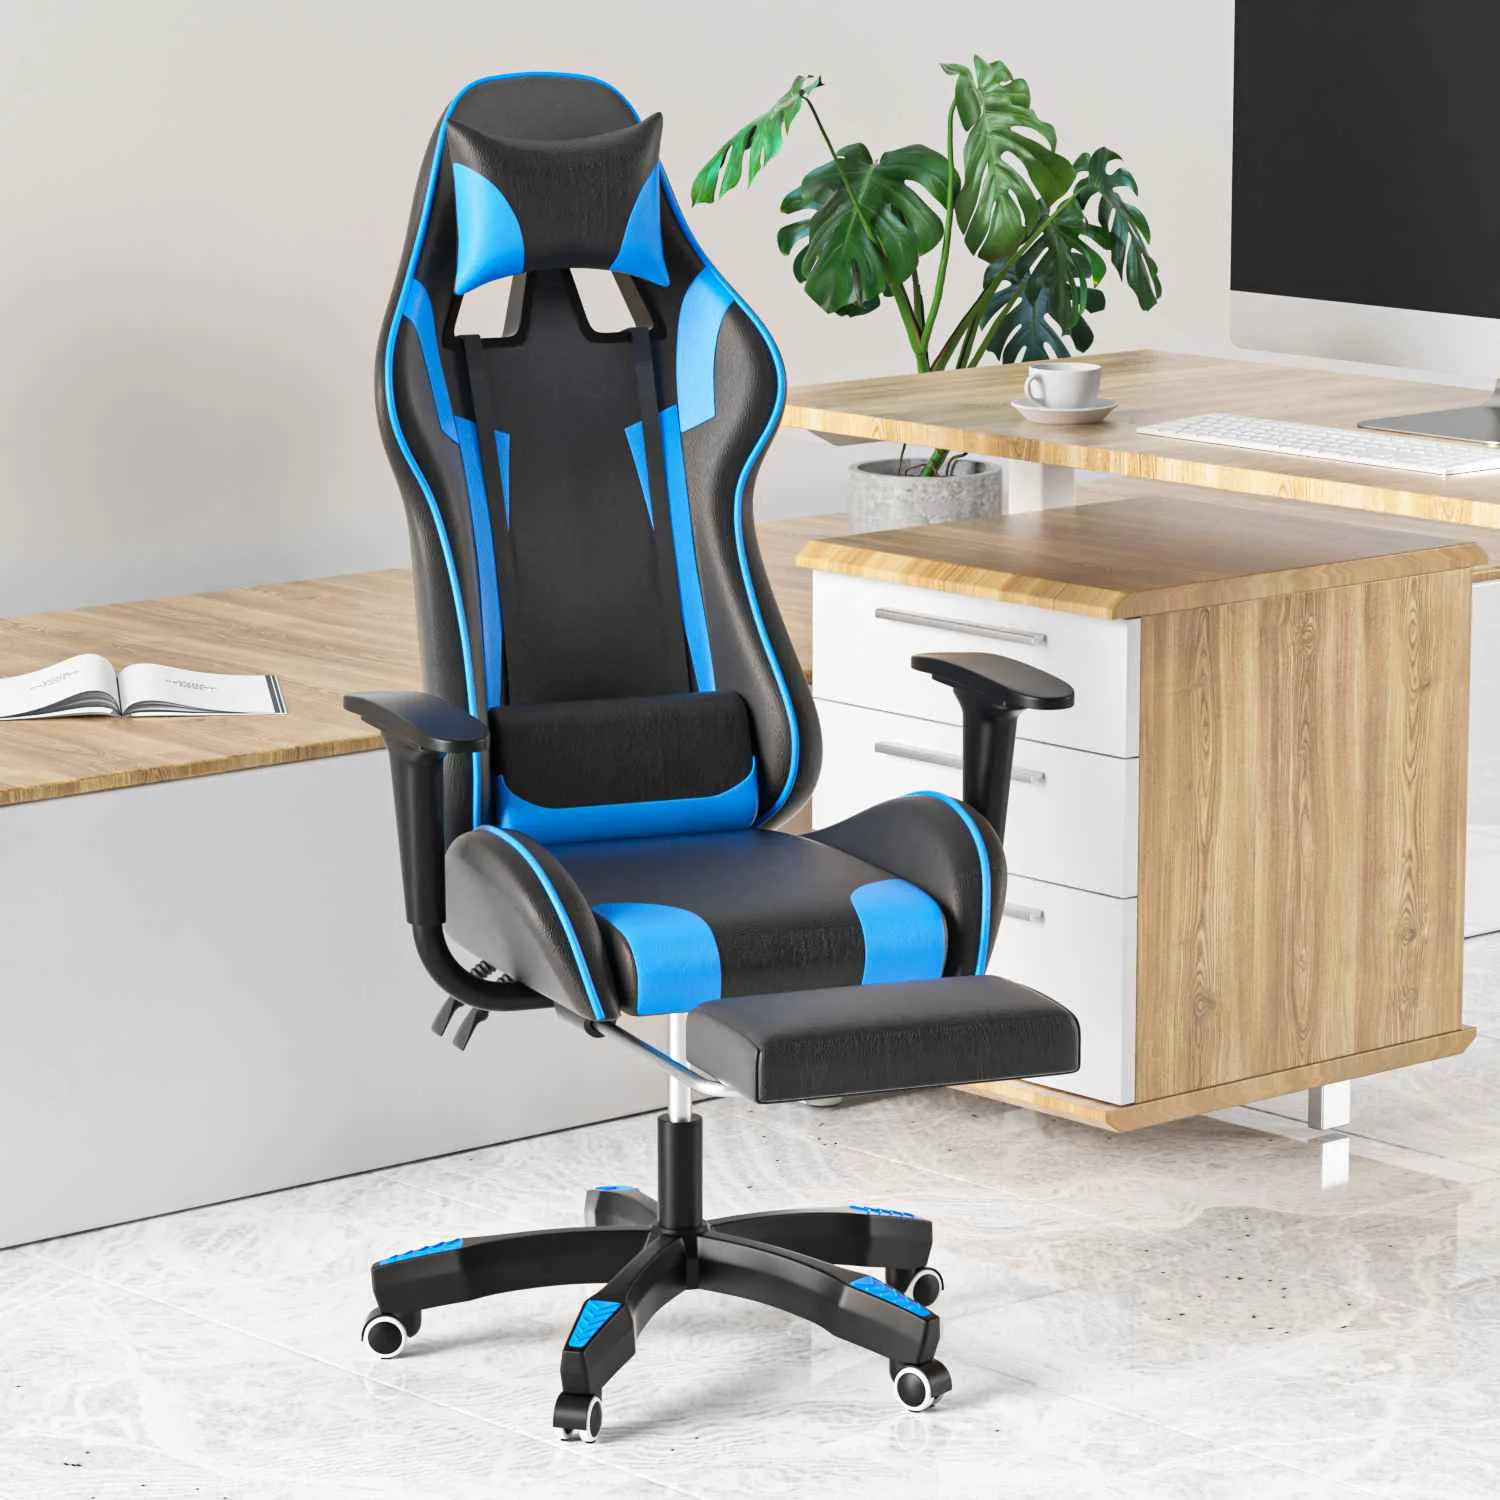 

Игровой ноутбук для дома и офиса кресла для отдыха возлежа компьютерное кресло комфортабельно сидеть кресло стол и стул лежа бытовой WCG игр...